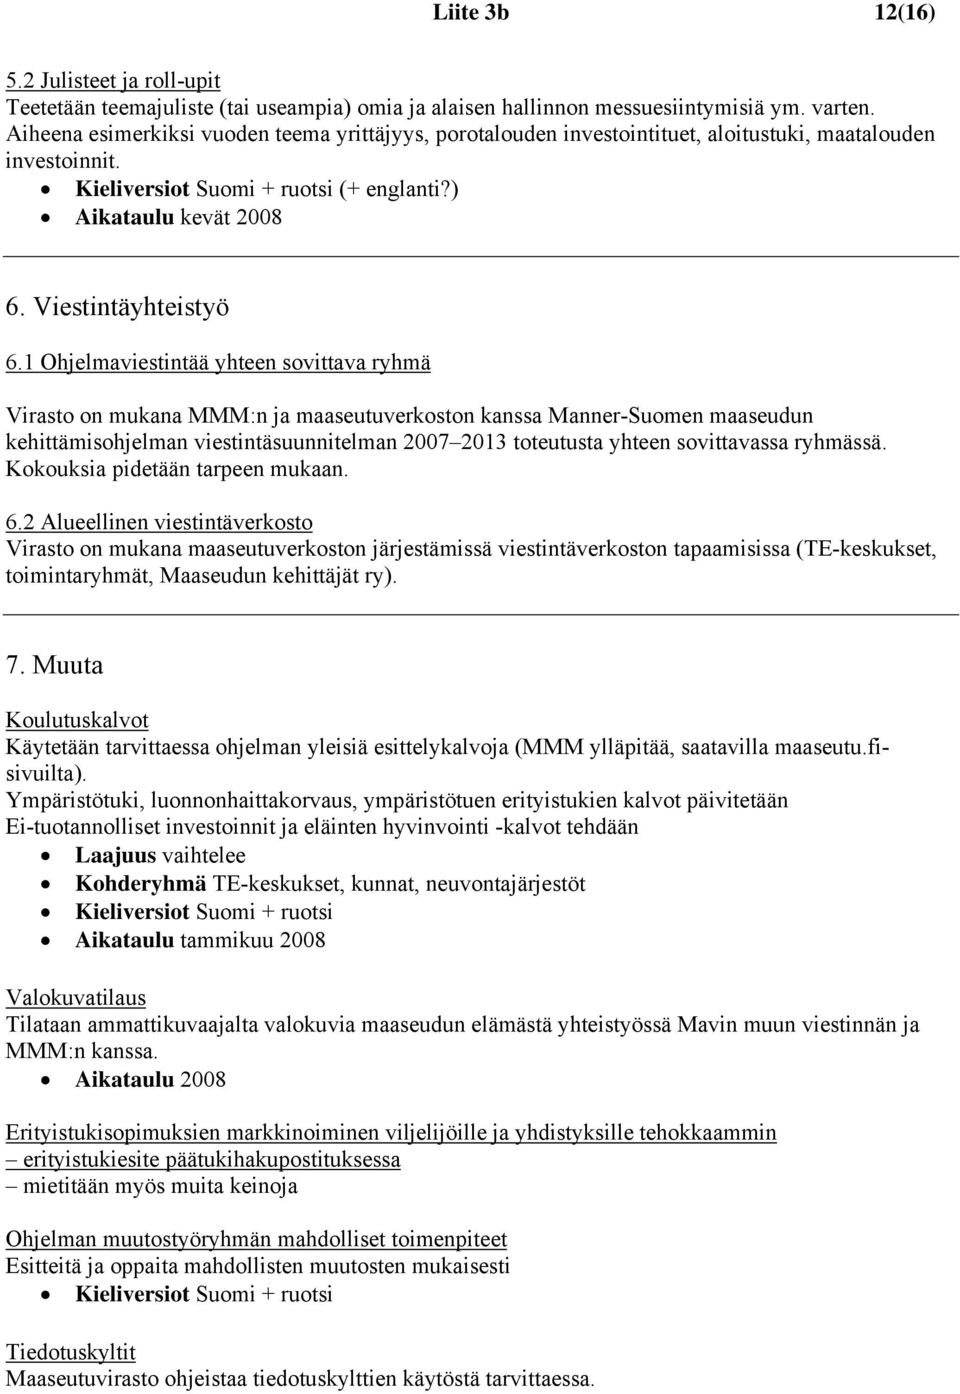 1 Ohjelmaviestintää yhteen sovittava ryhmä Virasto on mukana MMM:n ja maaseutuverkoston kanssa Manner-Suomen maaseudun kehittämisohjelman viestintäsuunnitelman 2007 2013 toteutusta yhteen